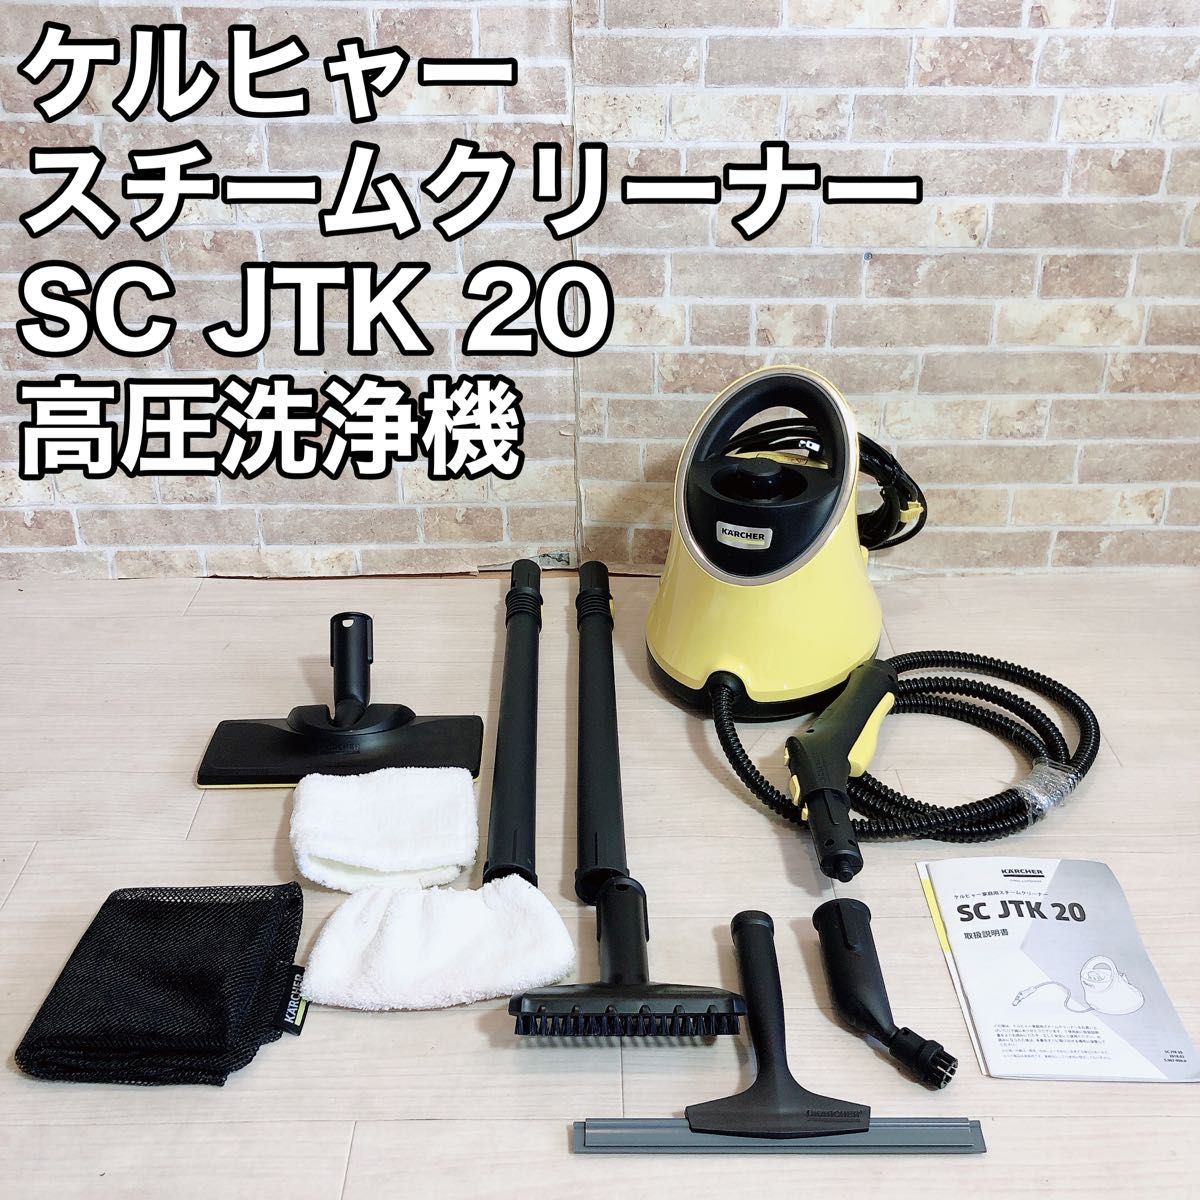 ケルヒャー スチームクリーナー SC JTK 20 高圧洗浄機